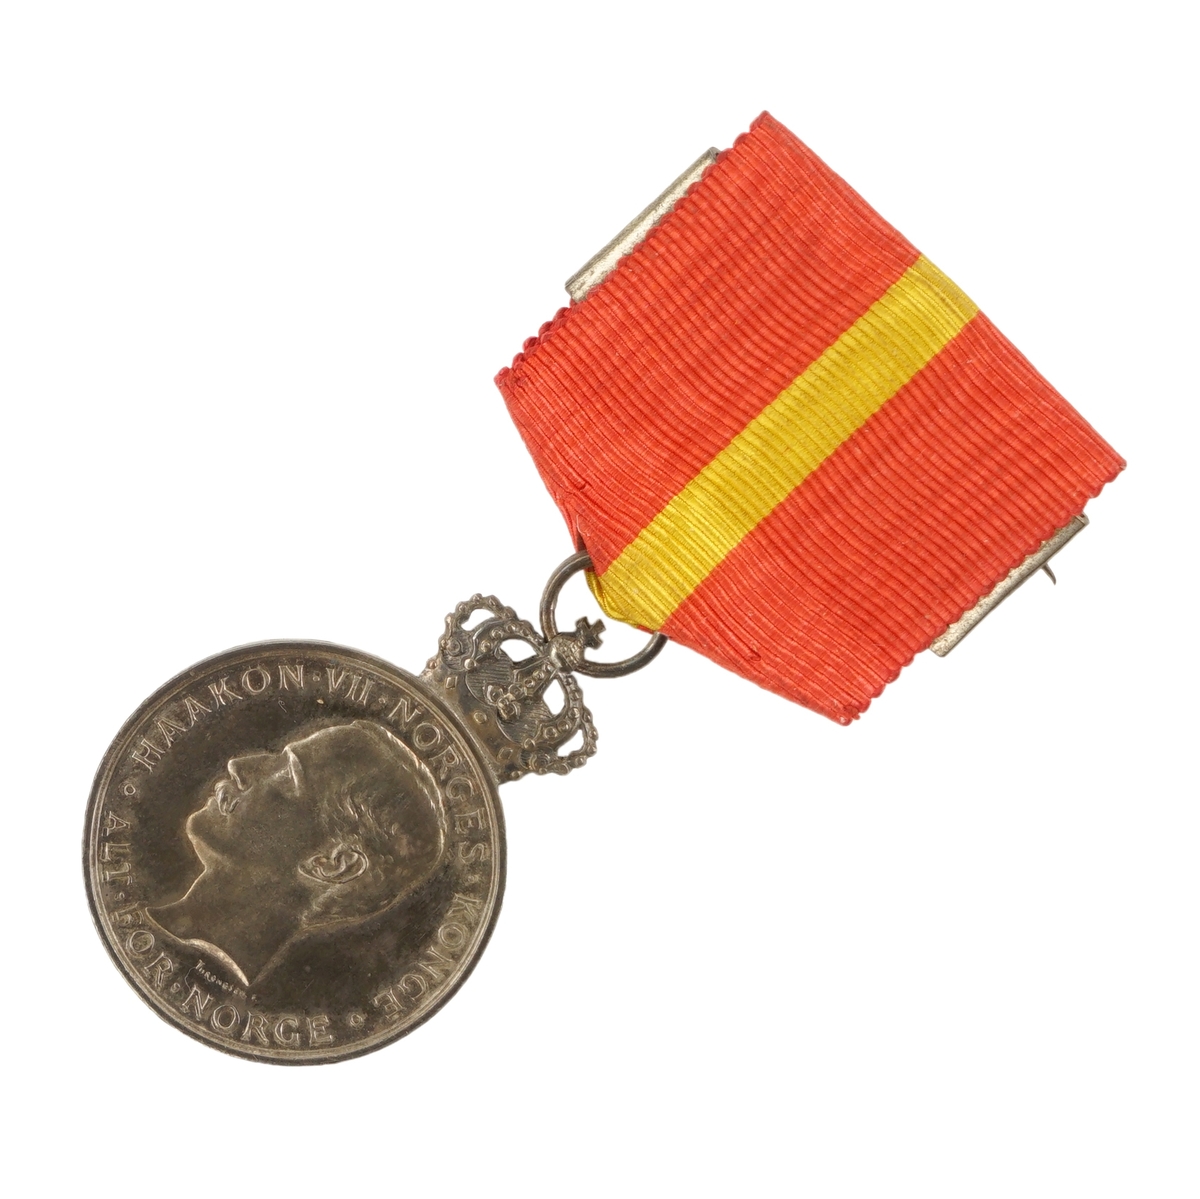 Sølvmedalje med krone festet i et tekstilbånd med festenål